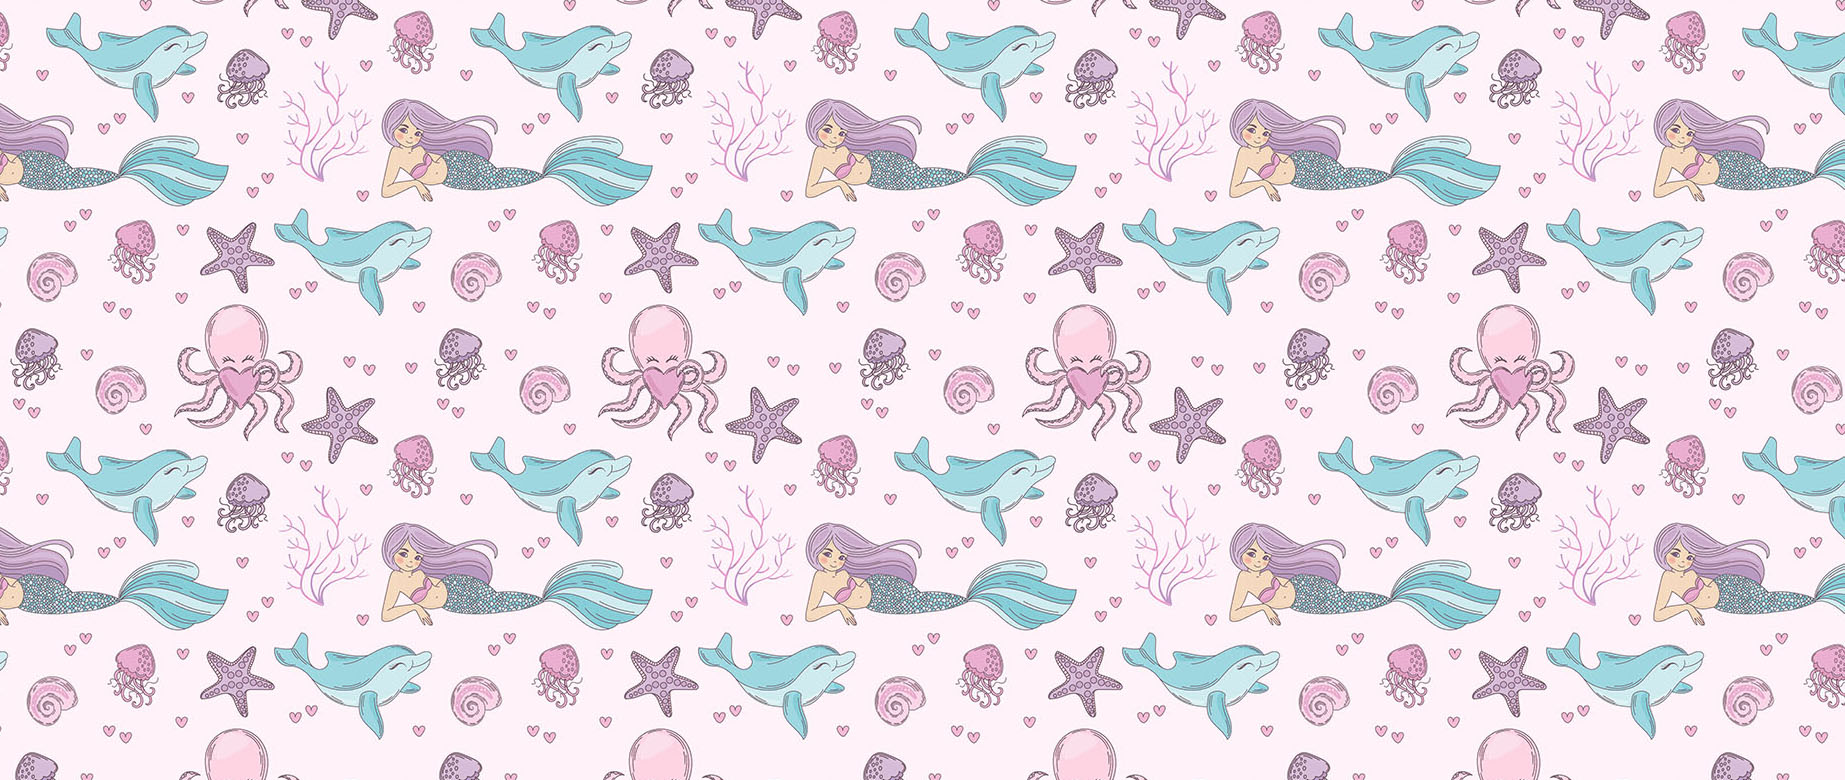 Mermaid-Underwater-In-Pink-wallpaper-seamless-repeat-view